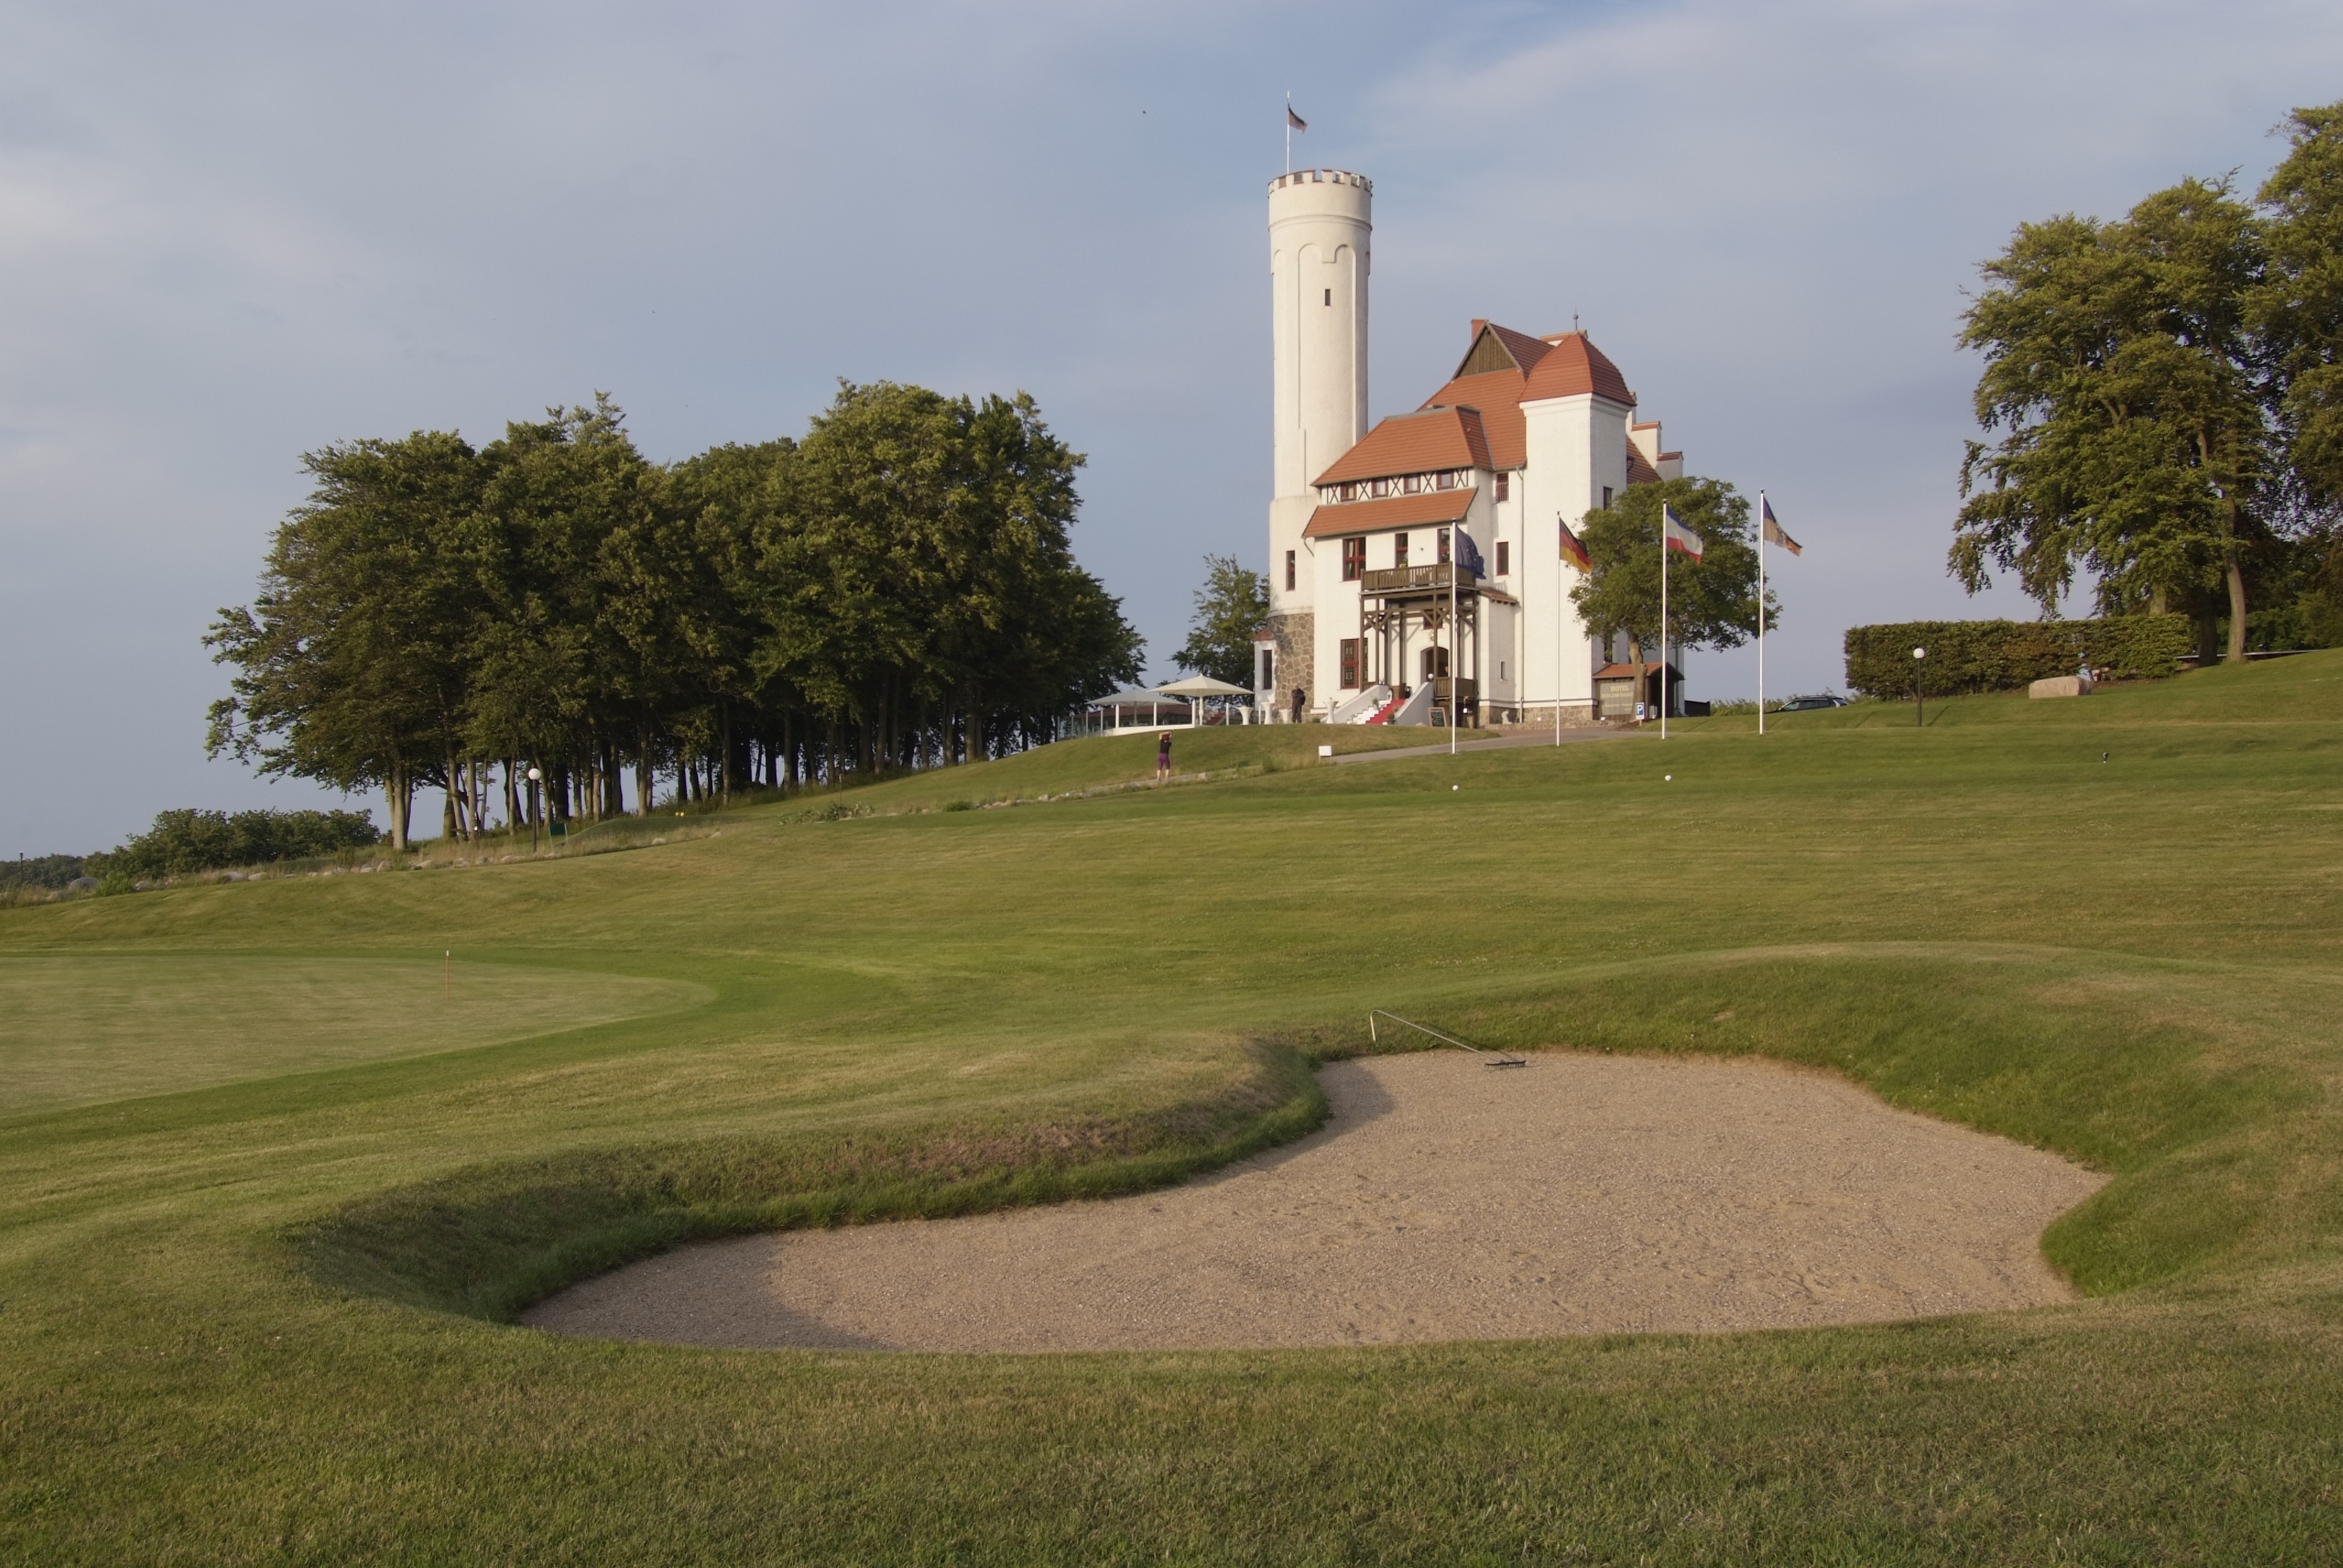 Hotel Schloss Ranzow mit Golfplatz im Vordergrund.
